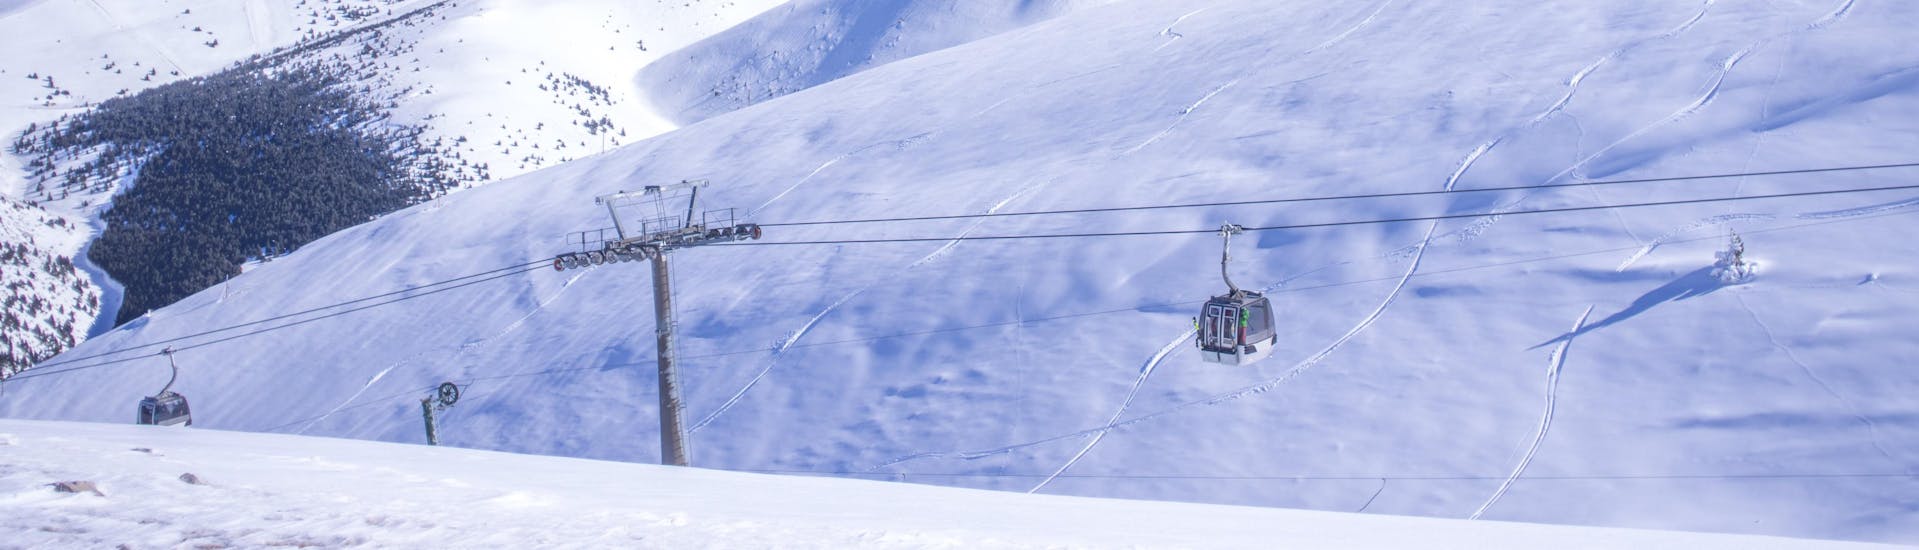 Ein Bild einer Gondel im katalanischen Skigebiet La Molina, wo Besucher bei einer der örtlichen Skischulen einen Skikurs buchen können.